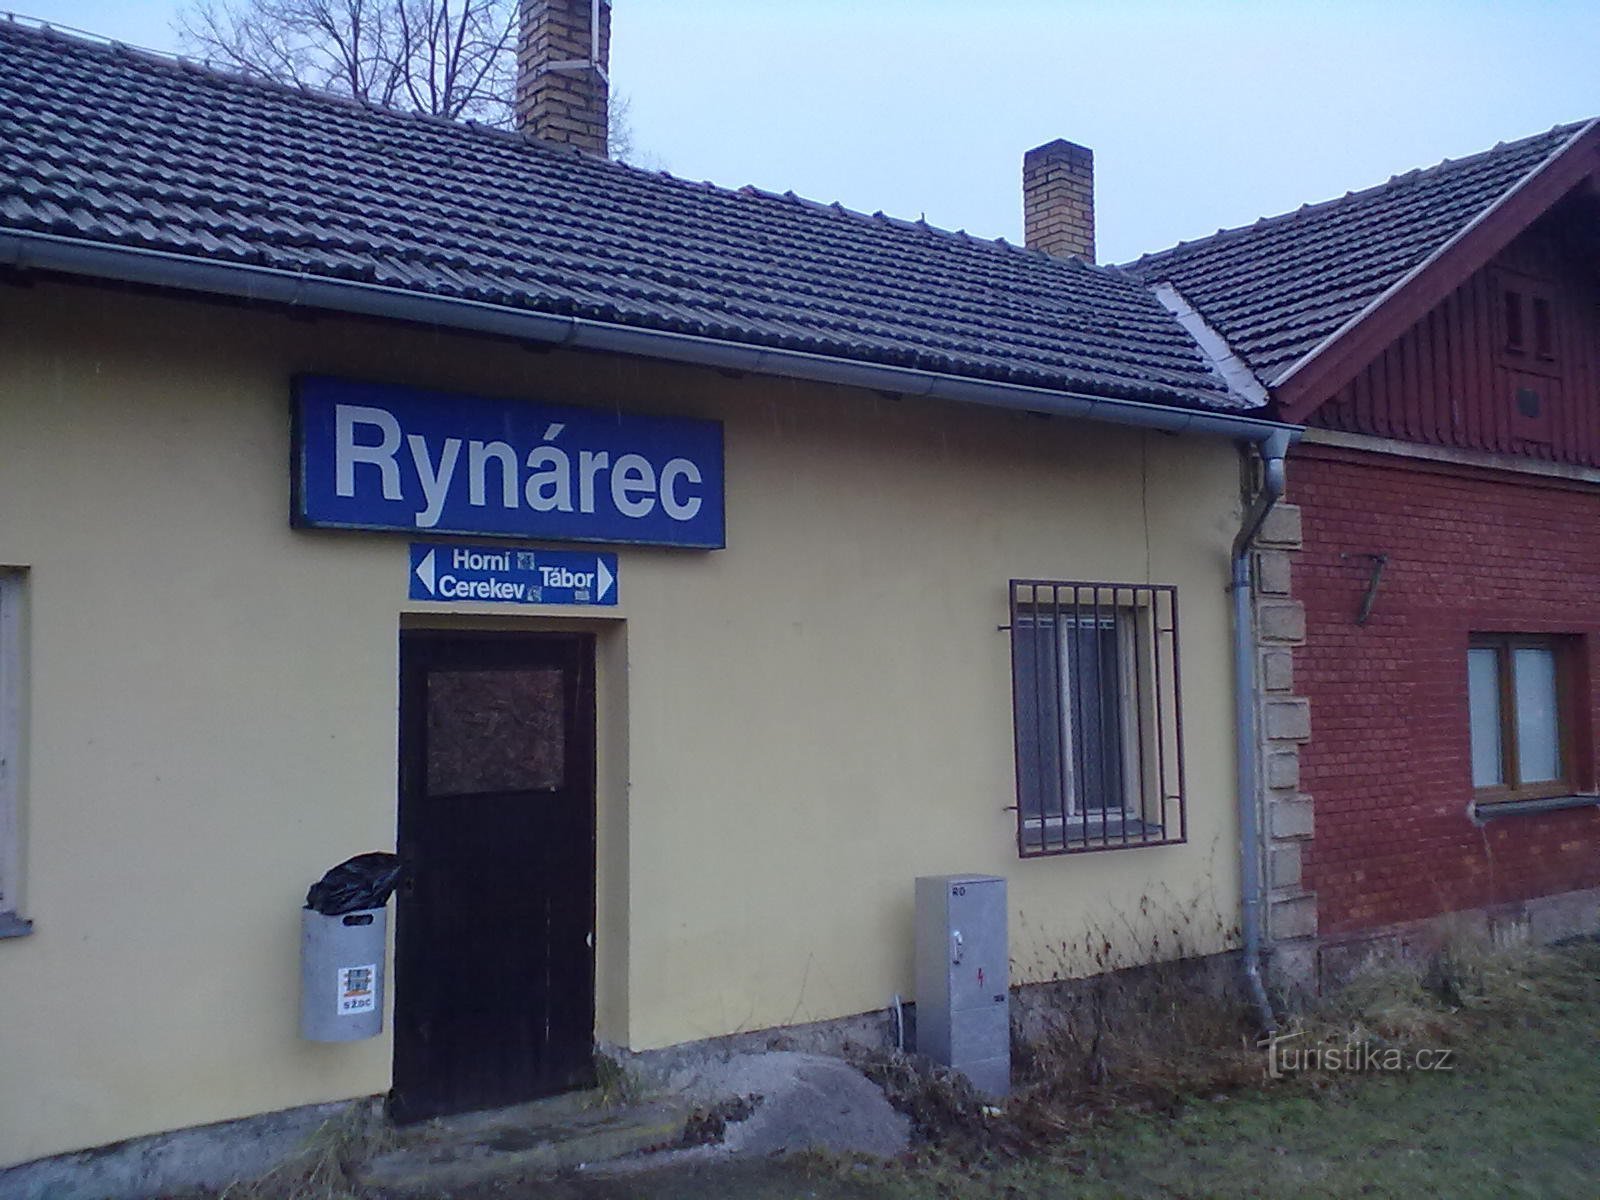 O início da jornada. Pare em Rynárec, nos arredores de Pelhřimov. Tem chovido bravamente desde a manhã.